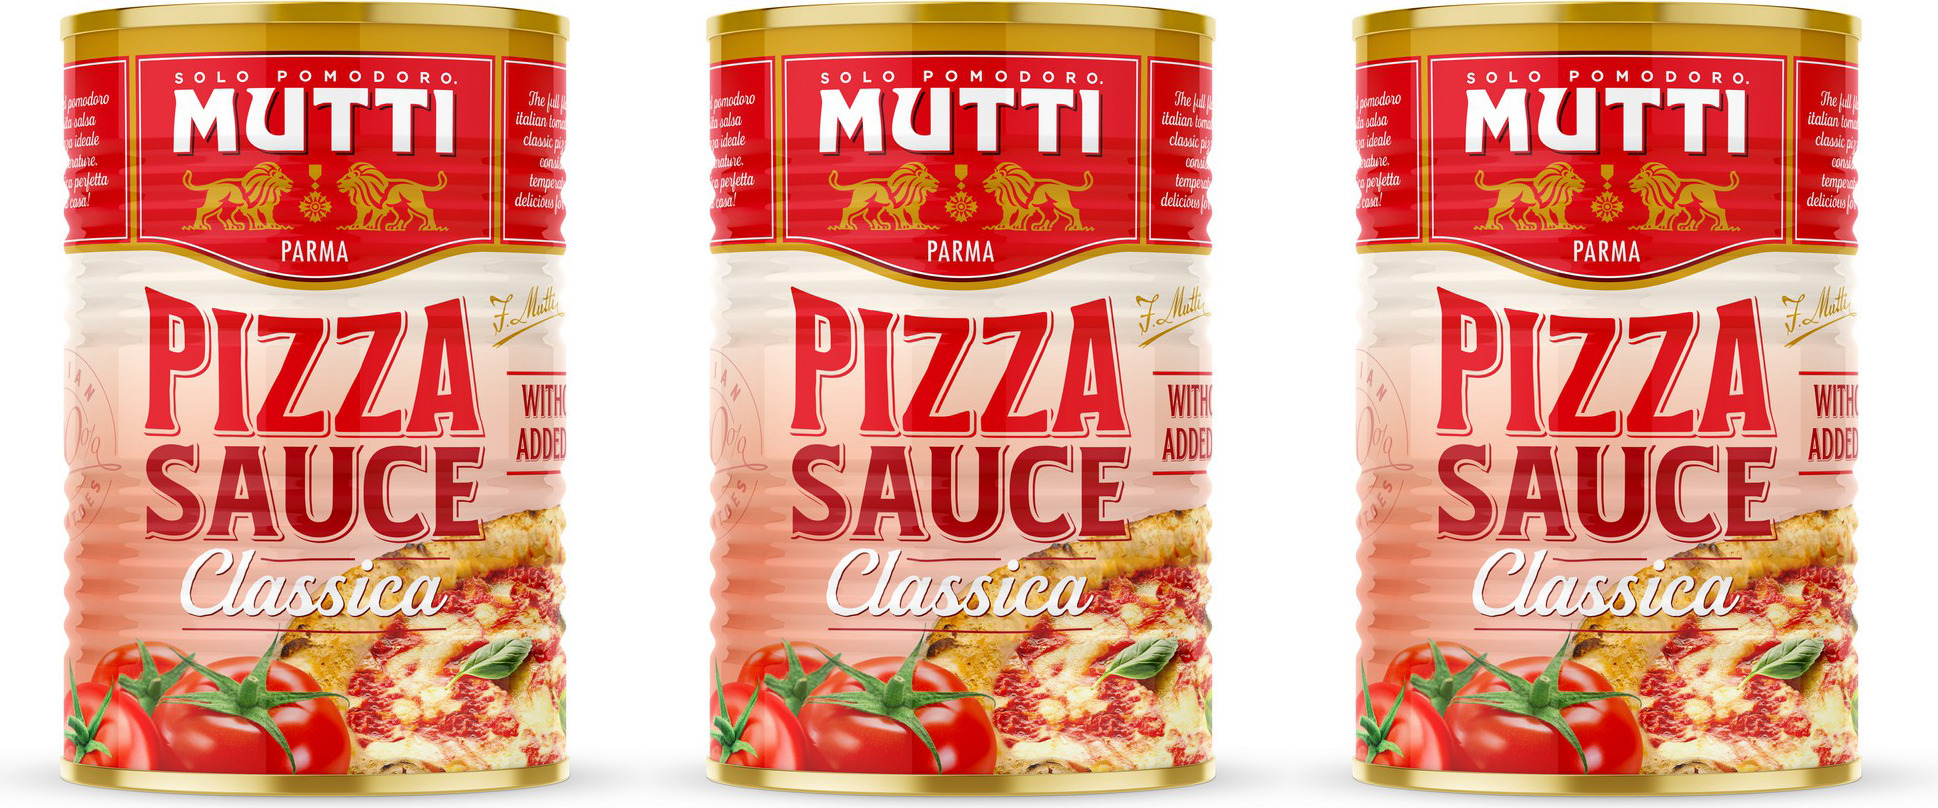 mutti соус для пиццы состав фото 104